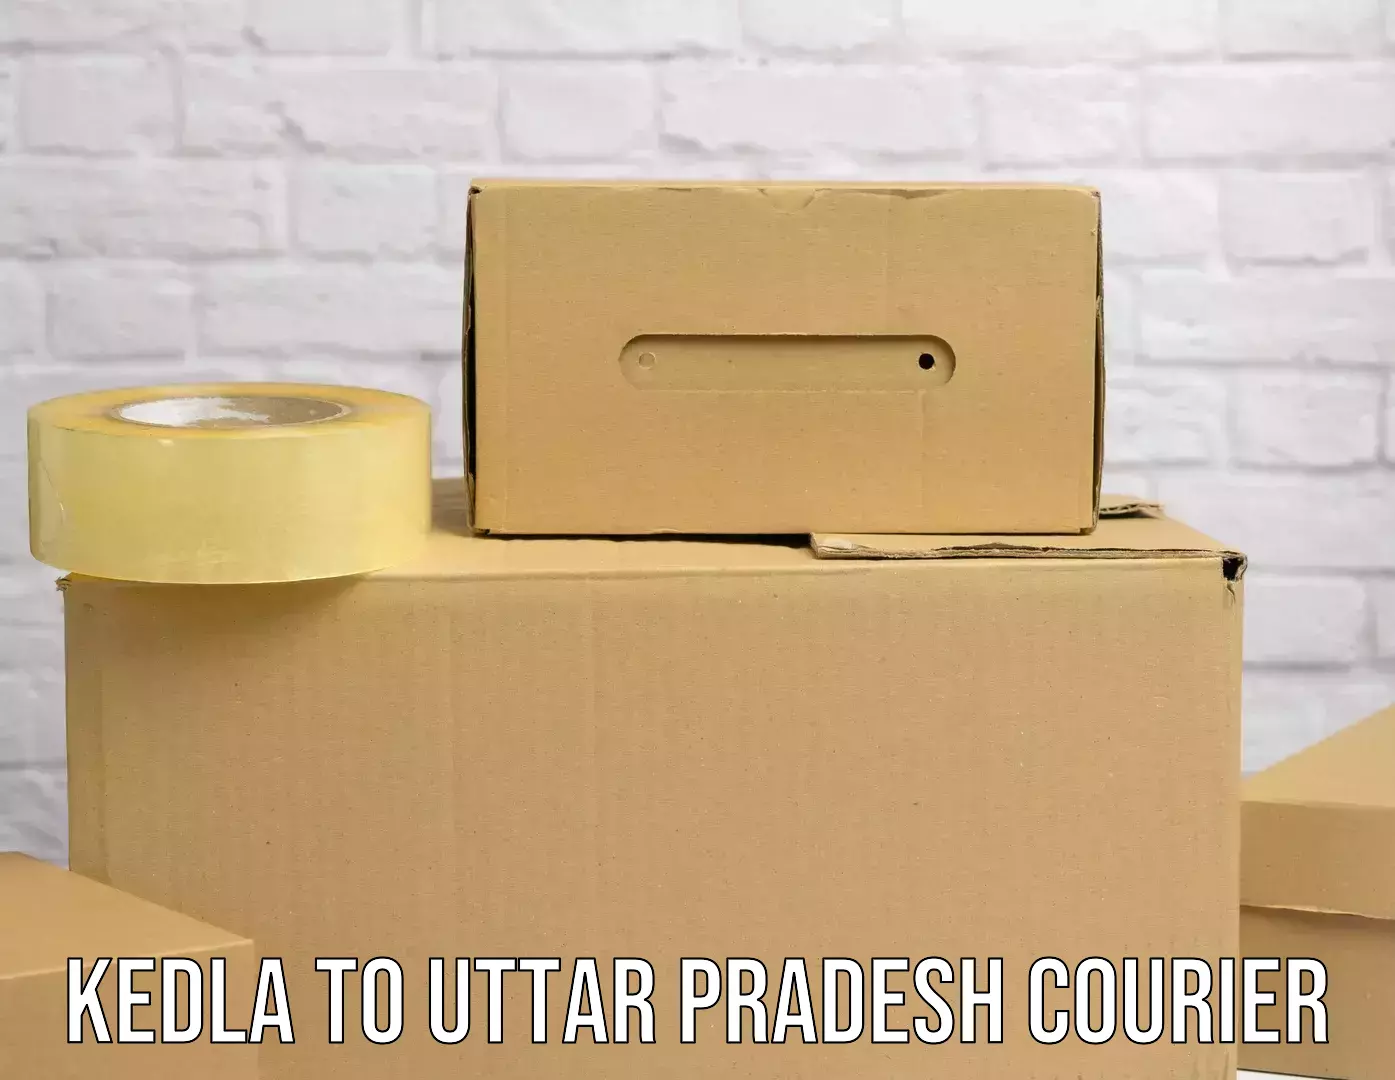 Ocean freight courier Kedla to Uttar Pradesh